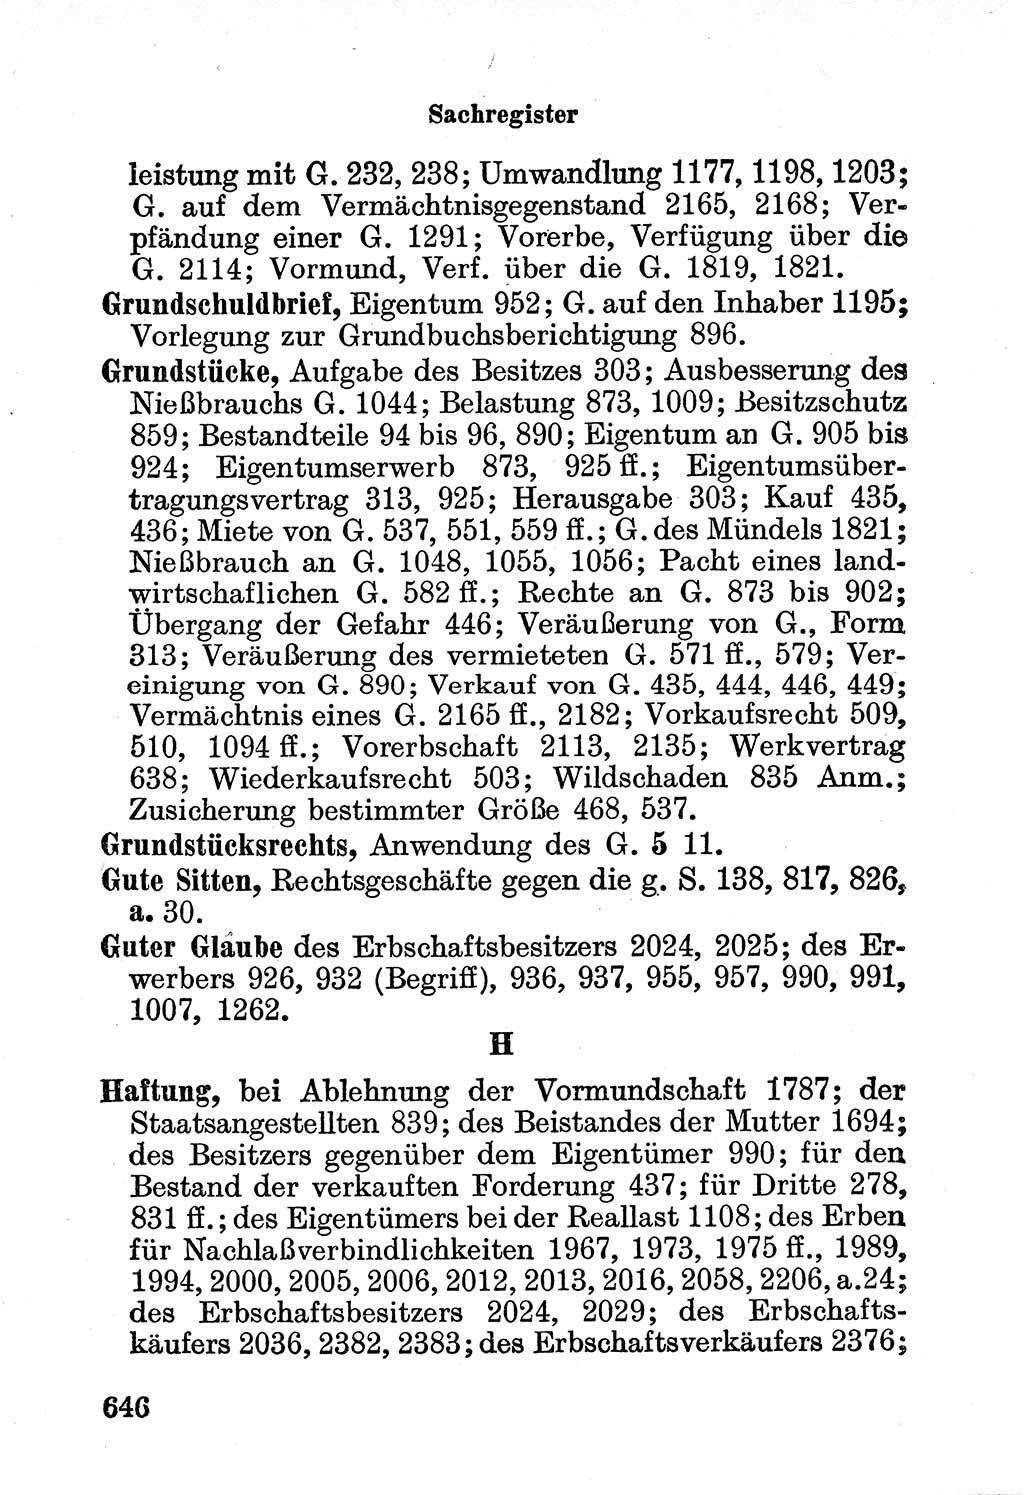 Bürgerliches Gesetzbuch (BGB) nebst wichtigen Nebengesetzen [Deutsche Demokratische Republik (DDR)] 1956, Seite 646 (BGB Nebenges. DDR 1956, S. 646)